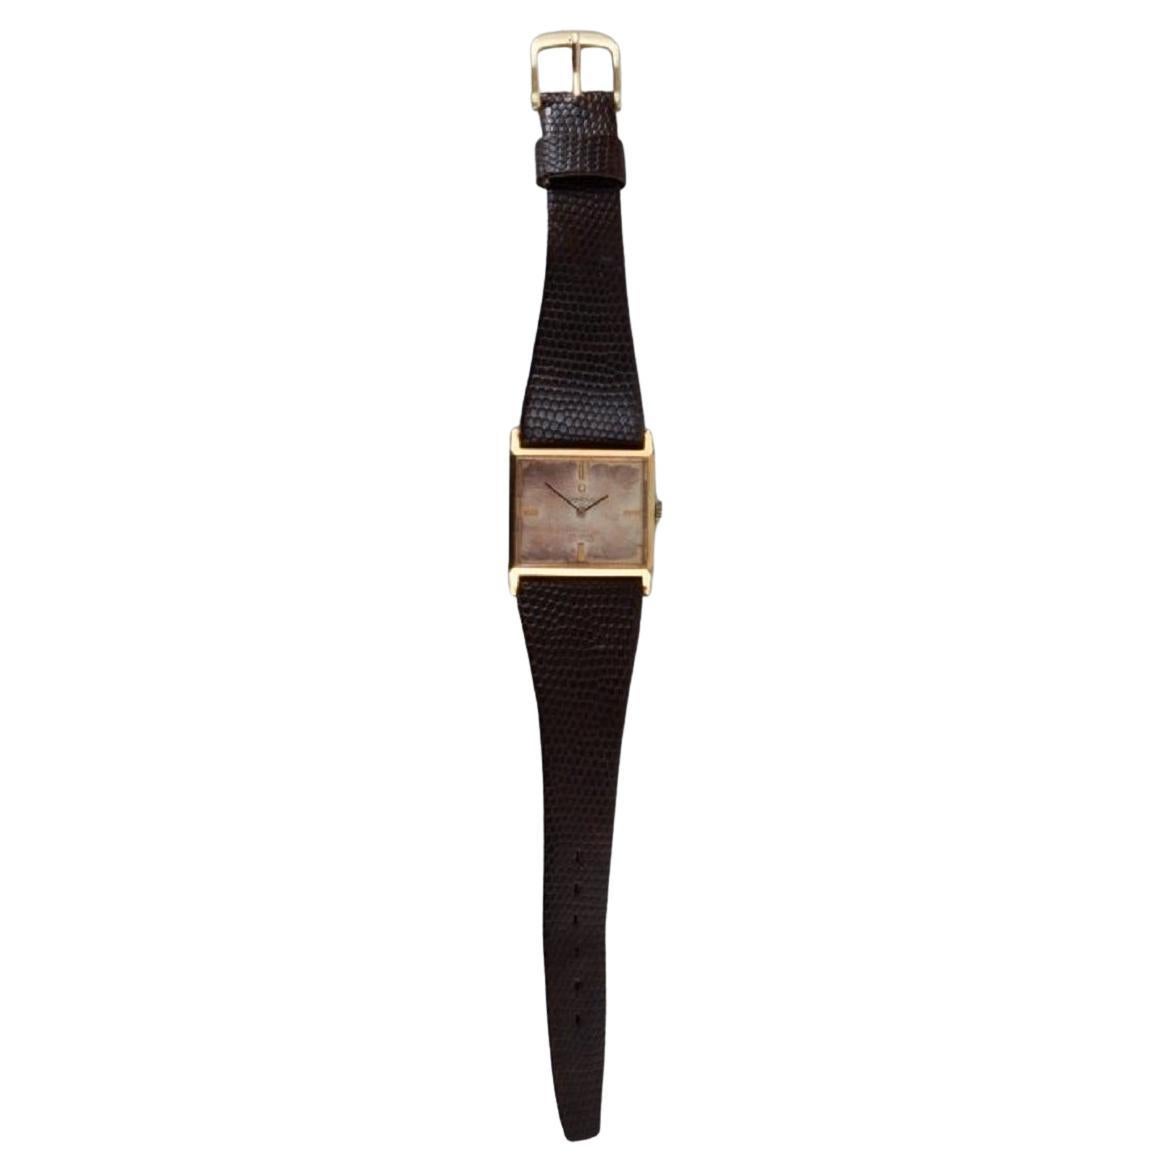 Montre-bracelet Omega Automatic de Ville pour dames, bracelet en cuir. Environ les années 1960.